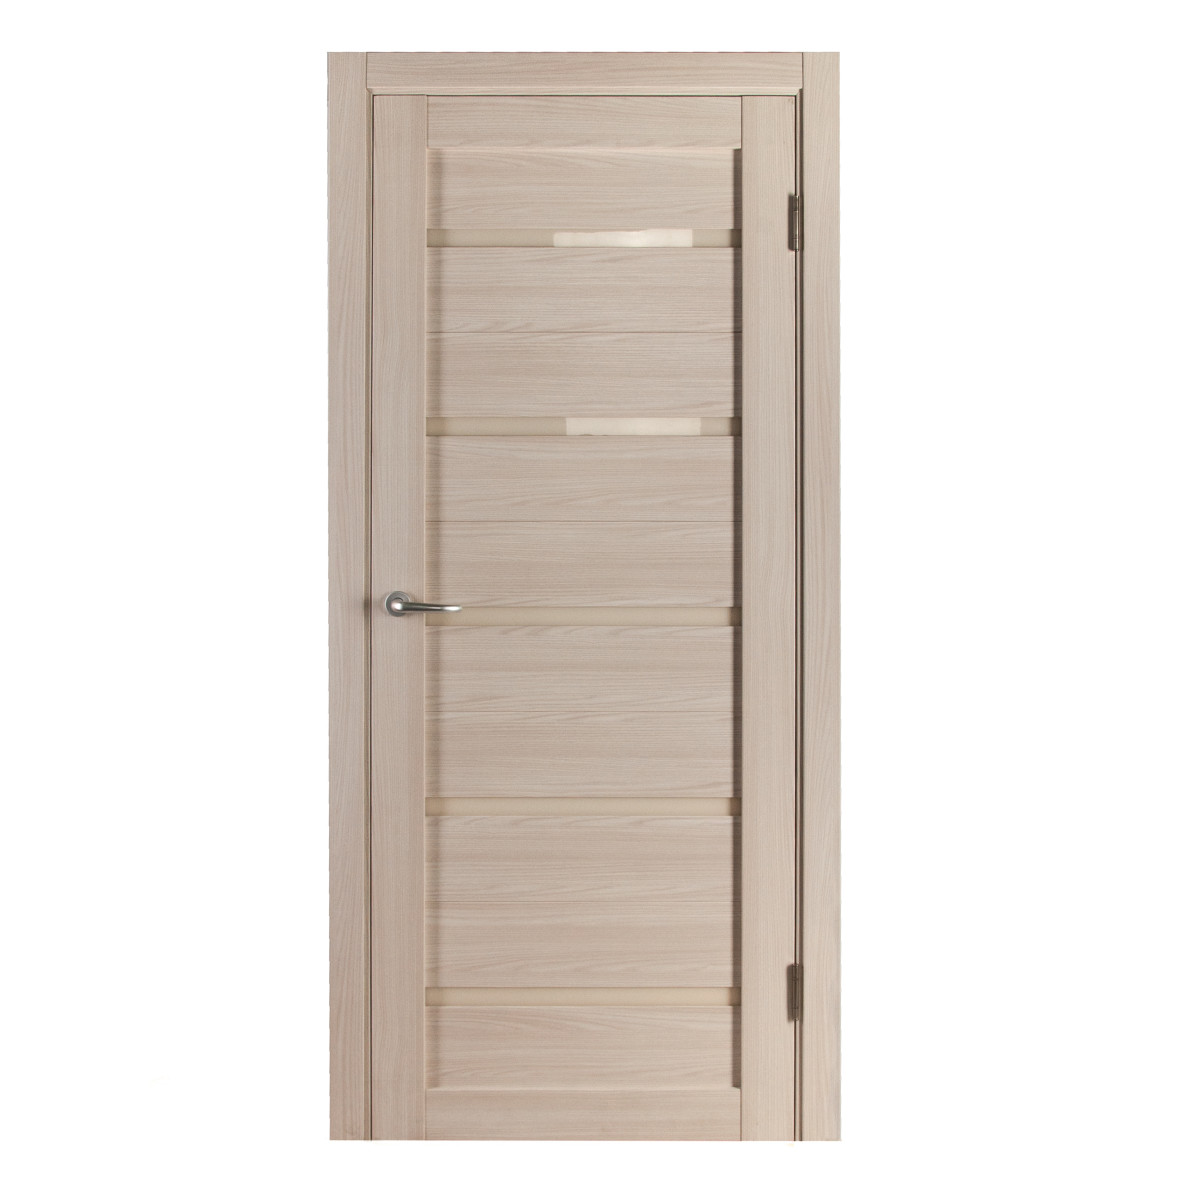 Дверь межкомнатная остеклённая с замком и петлями в комплекте Калипсо 70x200 см, Hardflex, цвет ясень бора